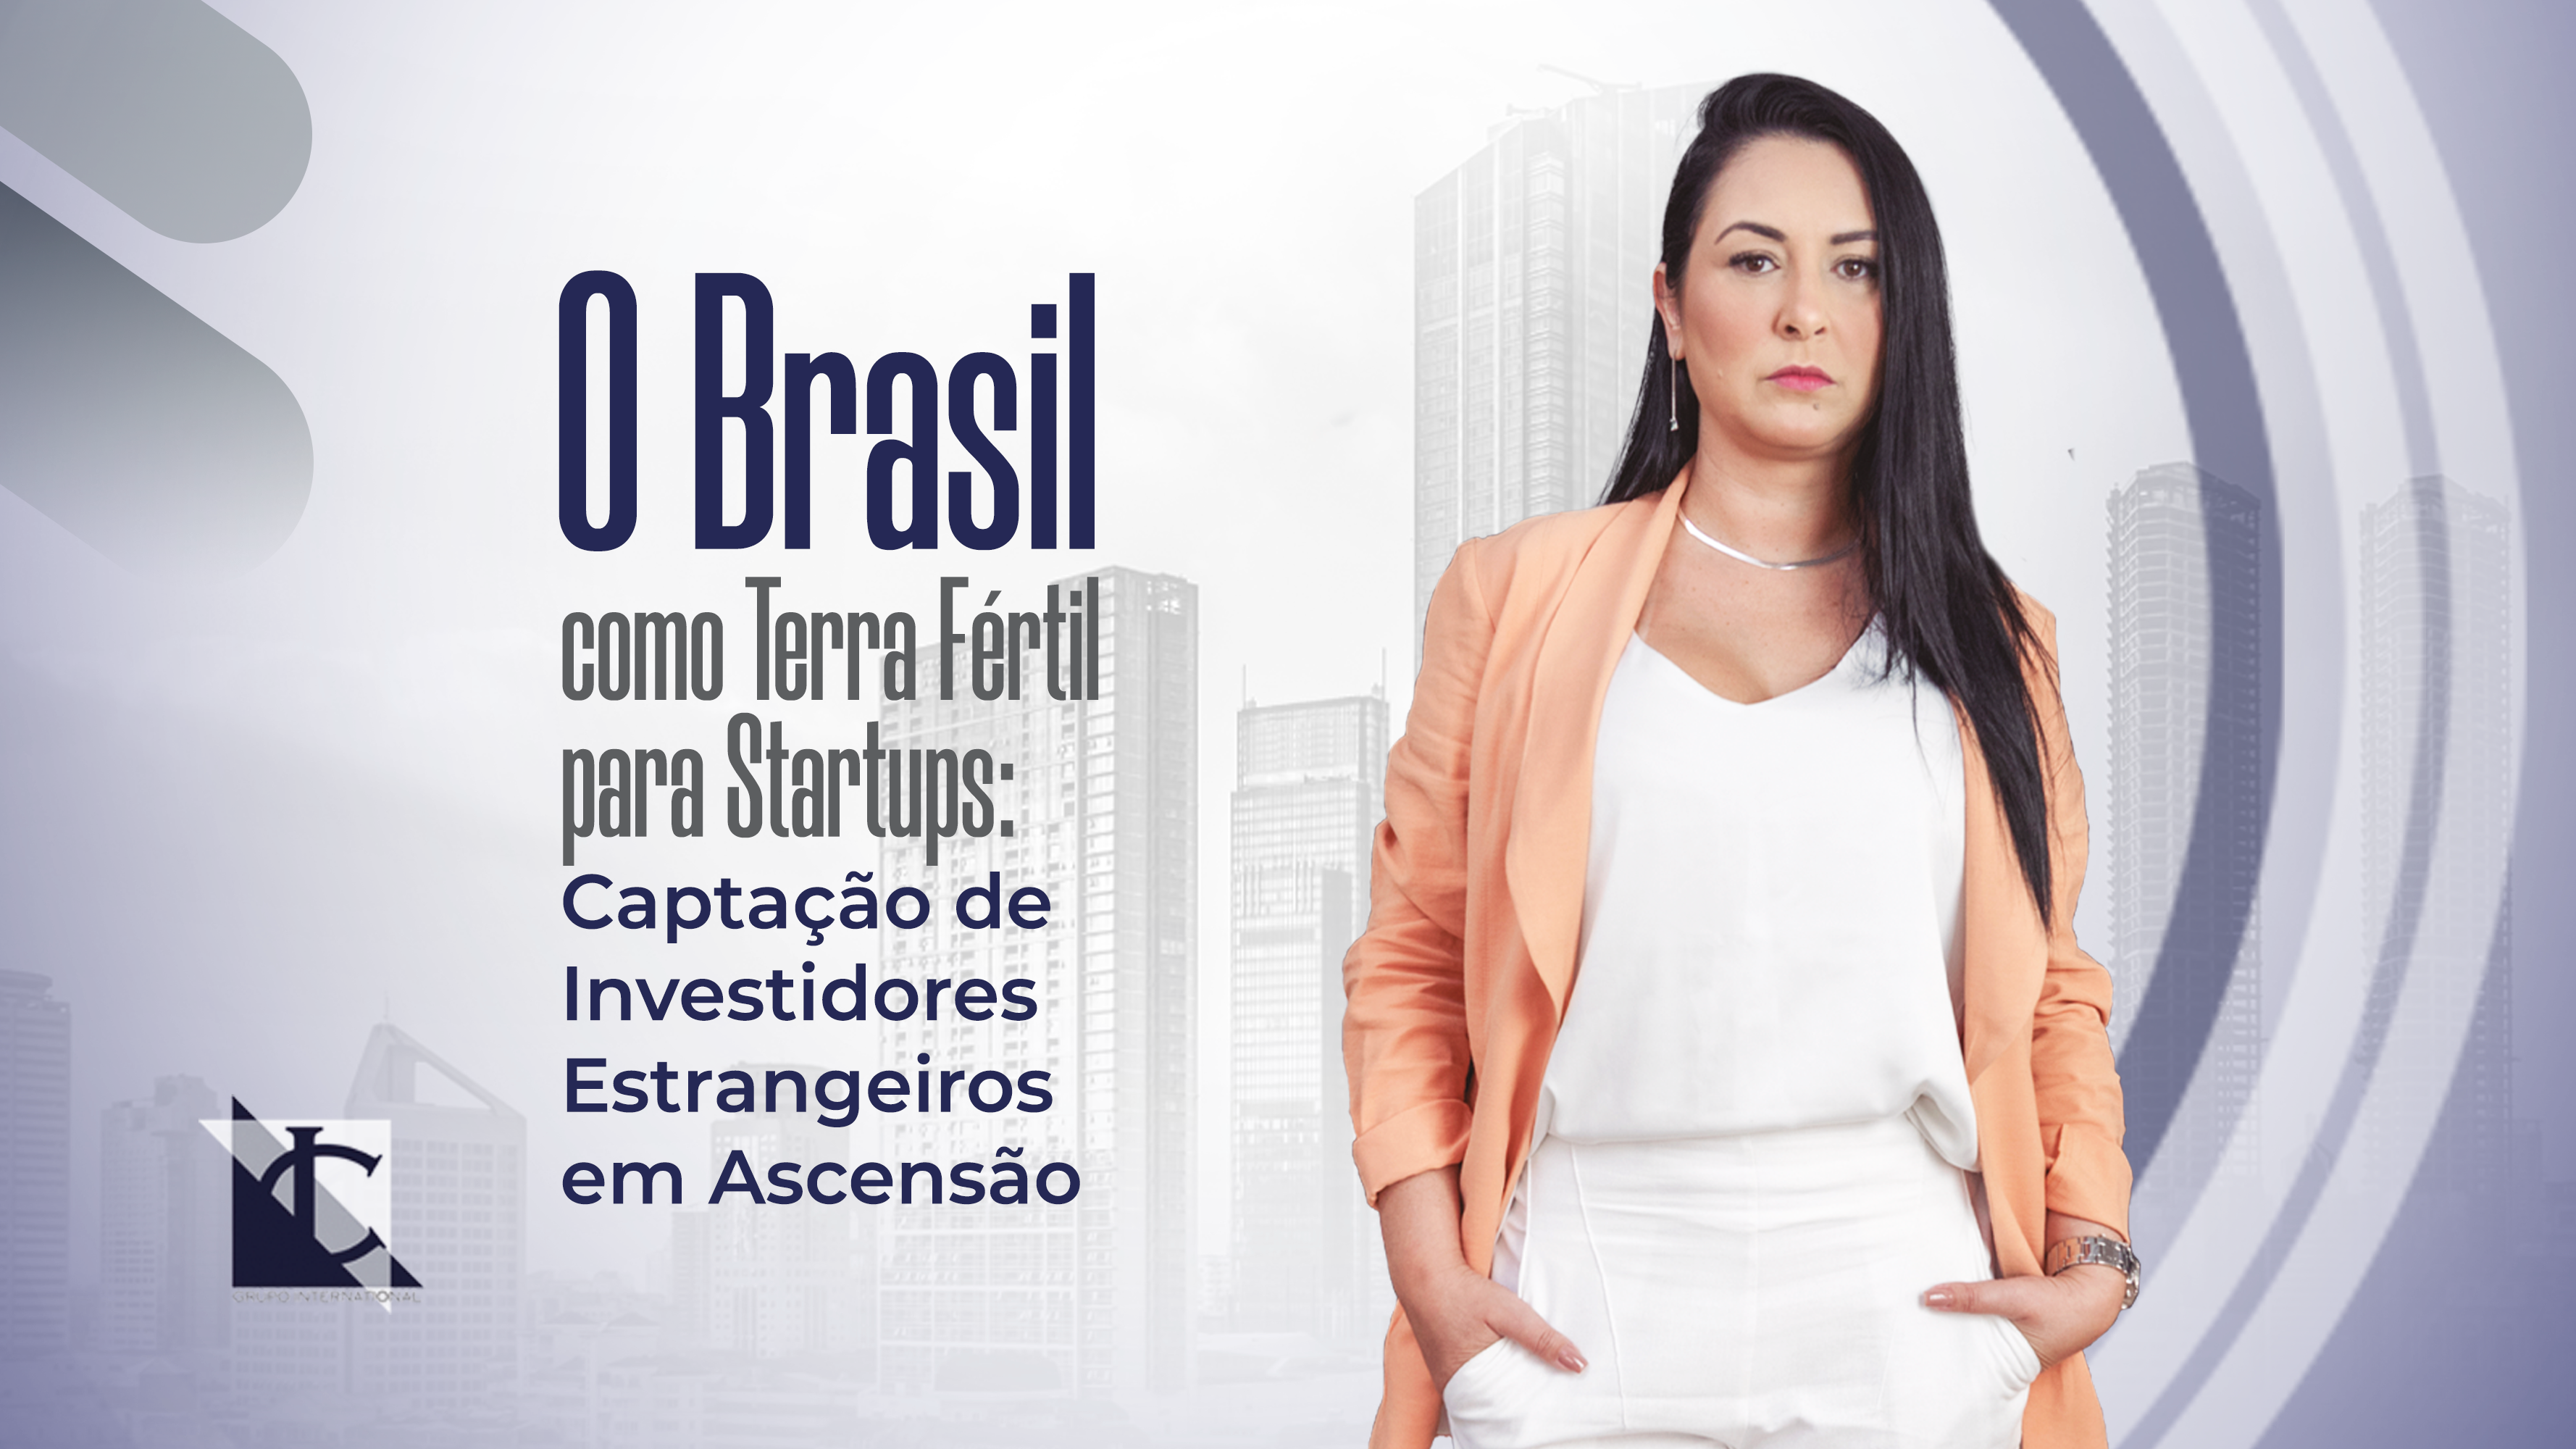 Leer más sobre Brasil, tierra fértil para las startups: crece la atracción de inversores extranjeros